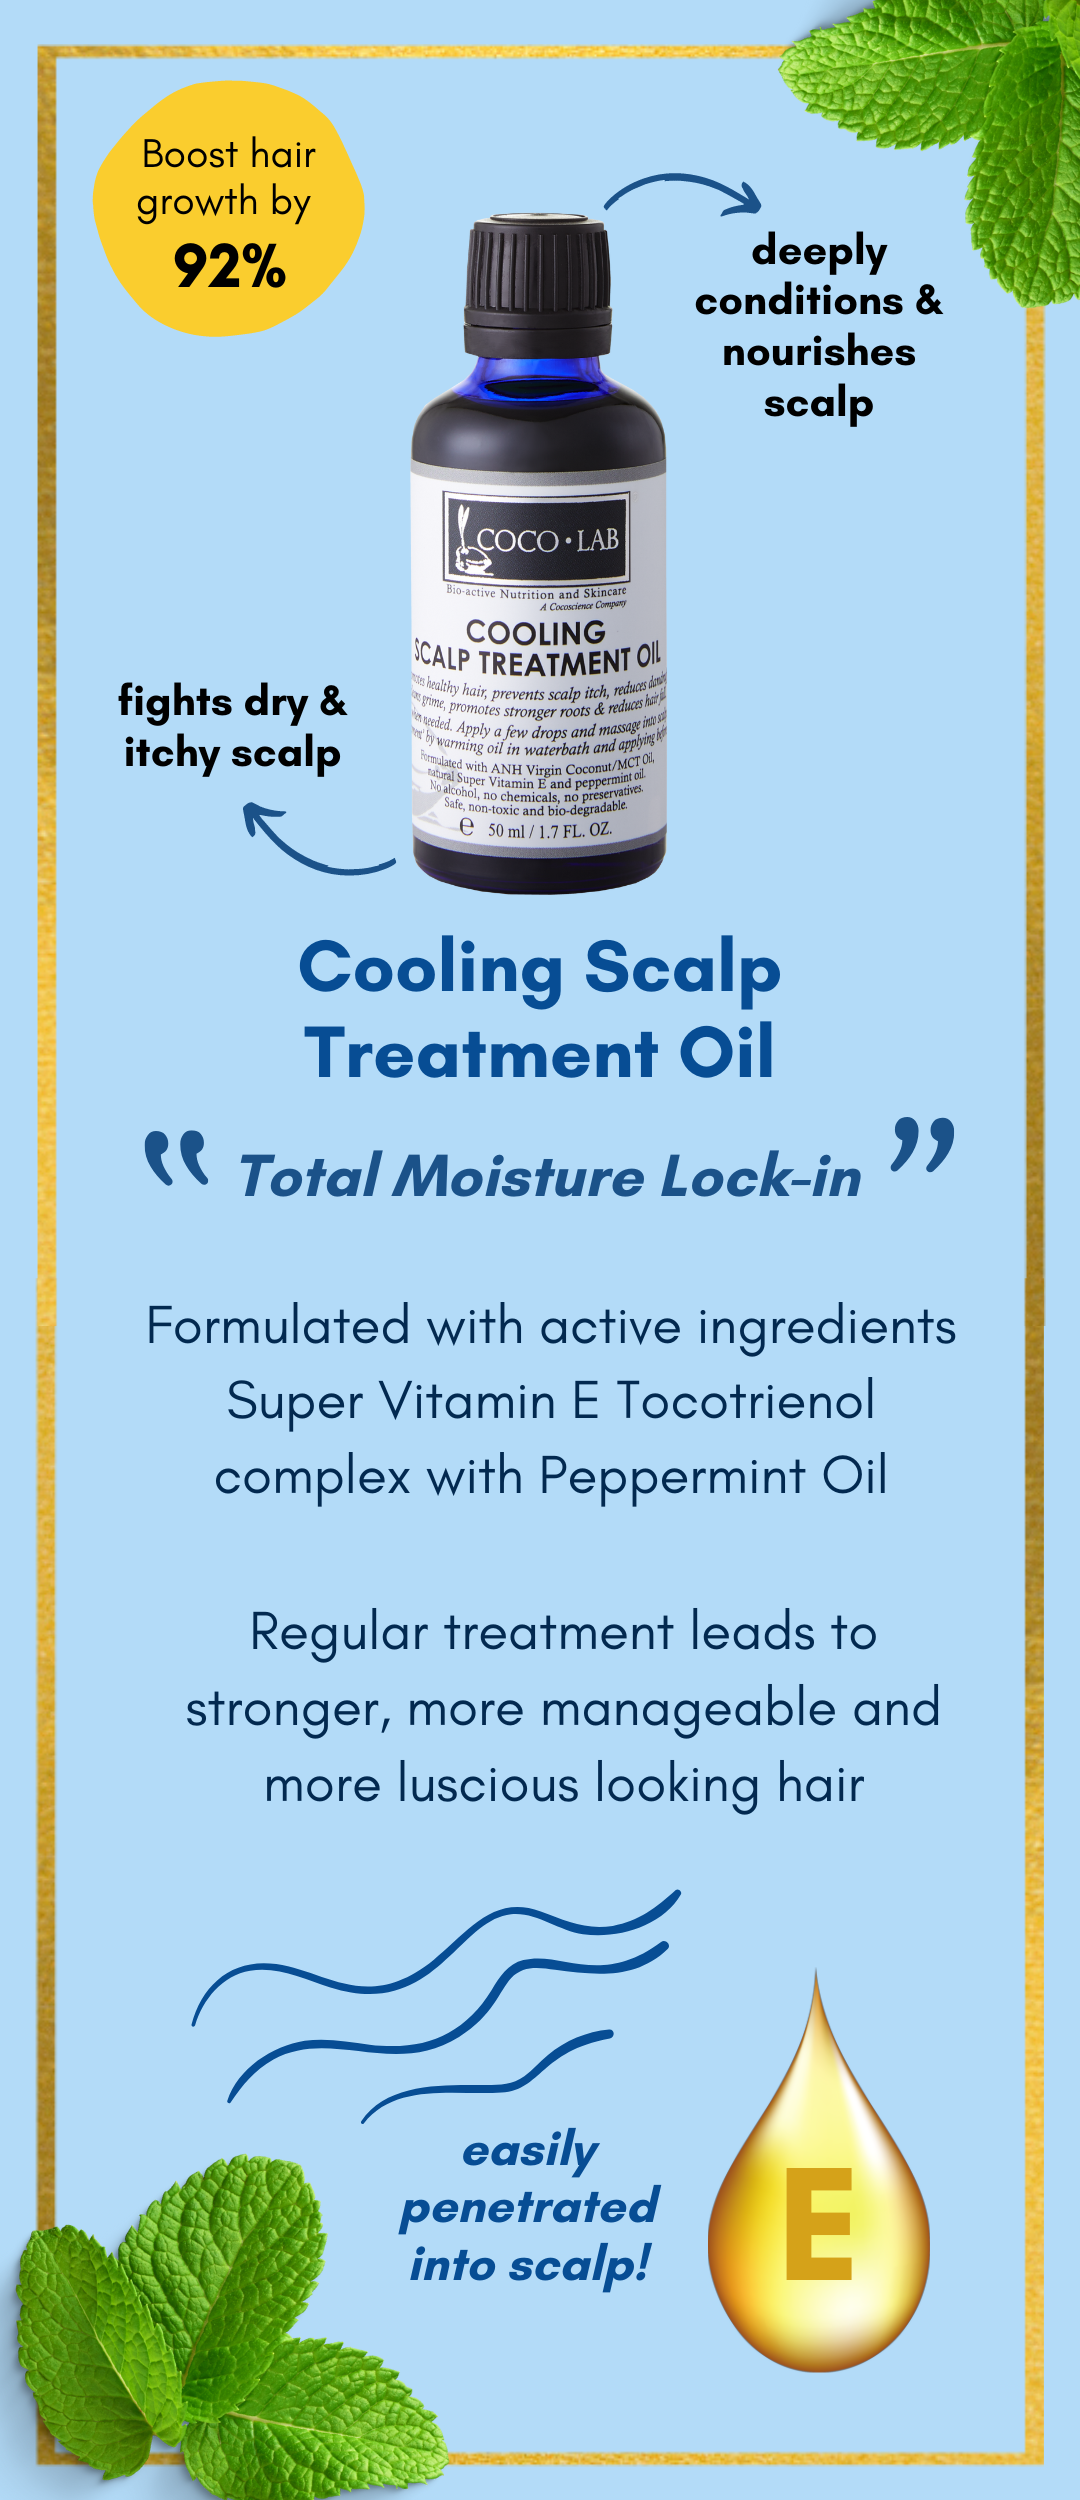 Cooling Scalp Treatment Oil Description